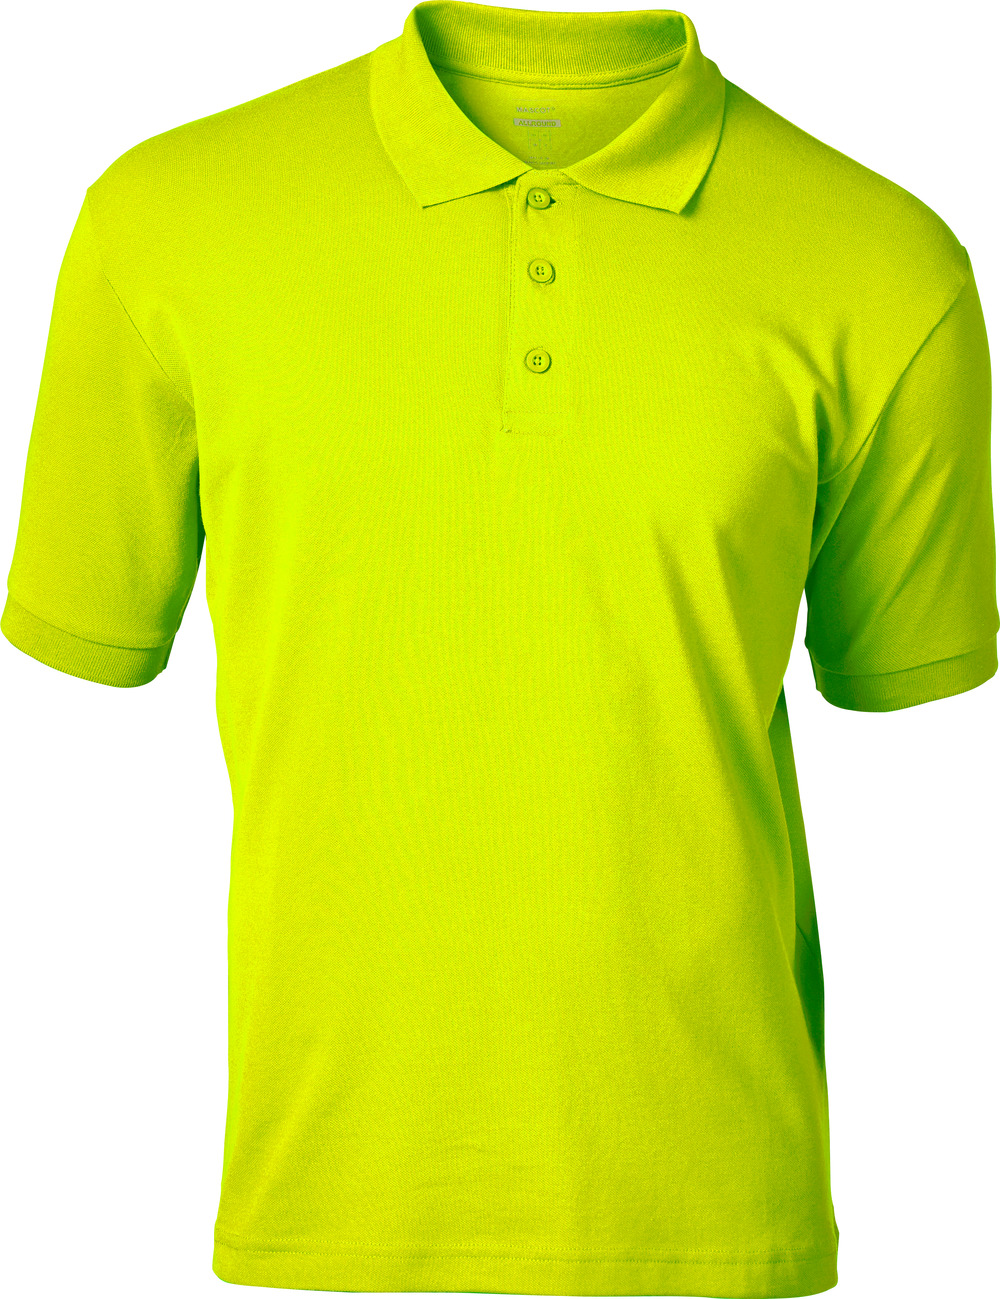 MASCOT-Workwear-Polo-Shirt, Bandol, CROSSOVER, 140 g/m², gelb